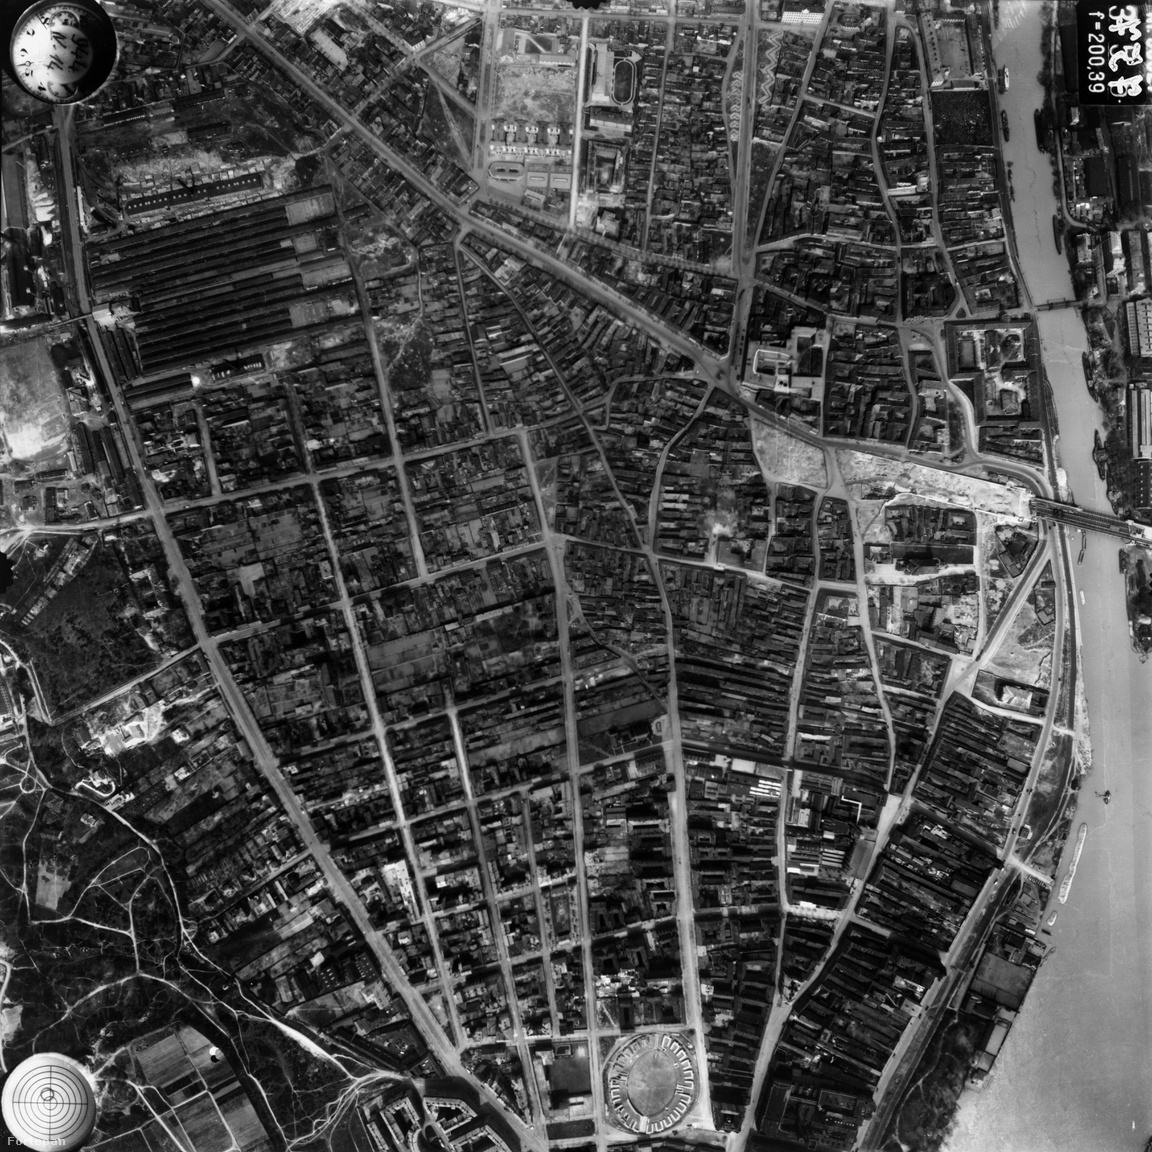 Sokkal durvábban alakították át a várost a háború utáni évtizedek Óbudán. Az eredeti
                        utcaszerkezetnek csupán a nyoma maradt meg, s az egykori kis házakból is csak hírmondónak
                        hagytak meg egy párat. Hogy mennyire lehetett itt jó lakni, az persze más kérdés, hiszen
                        elképesztően sűrű volt a beépítés. Ennyire aprómintás patchworköt sehol nem találunk a Budapest-
                        térképen. Ennek ellenére simán elfért a szűk utcákon a villamos is: nézzétek, épp ott fordul be a Fő
                        téren.